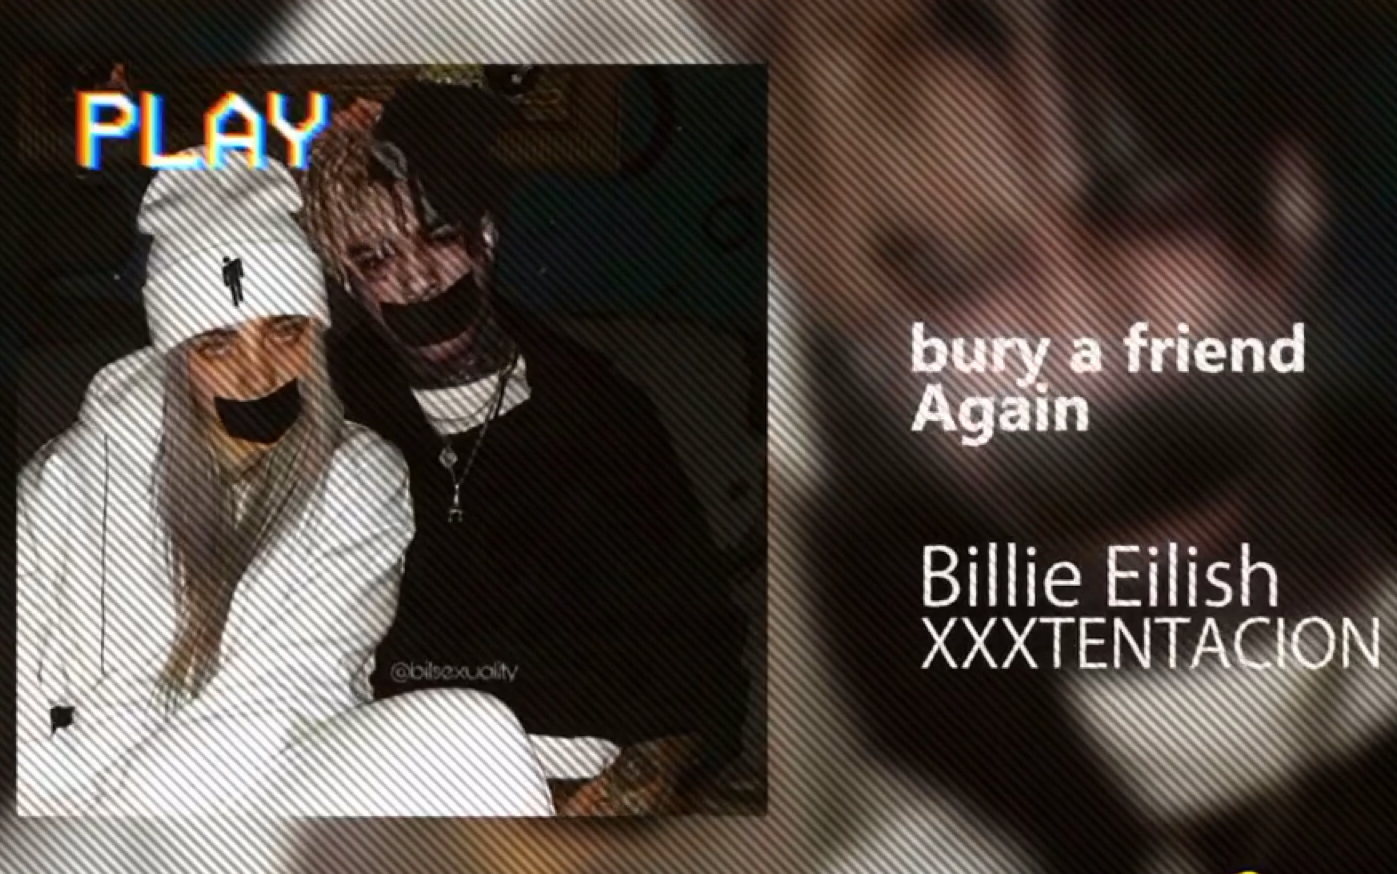 if xxxtentacion was on bury a friend with billie eilish